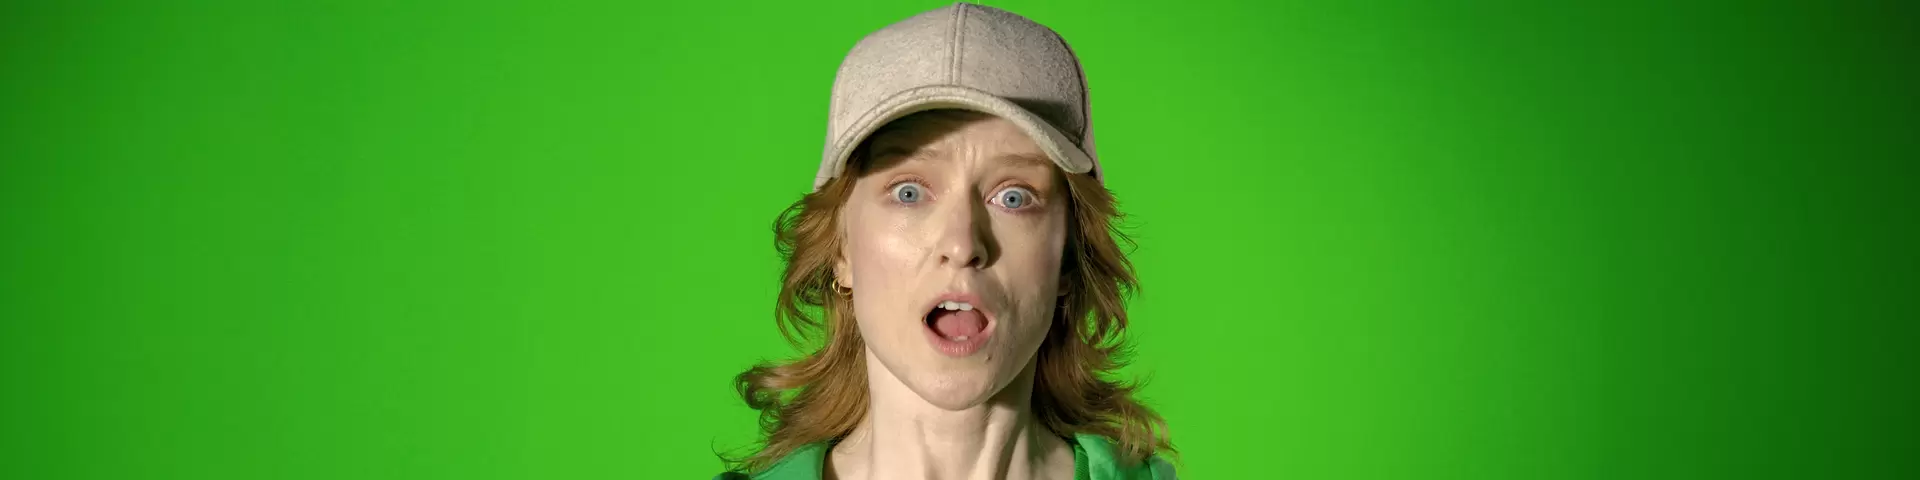 Kvinna mot grön bakgrund som ser chockad ut.